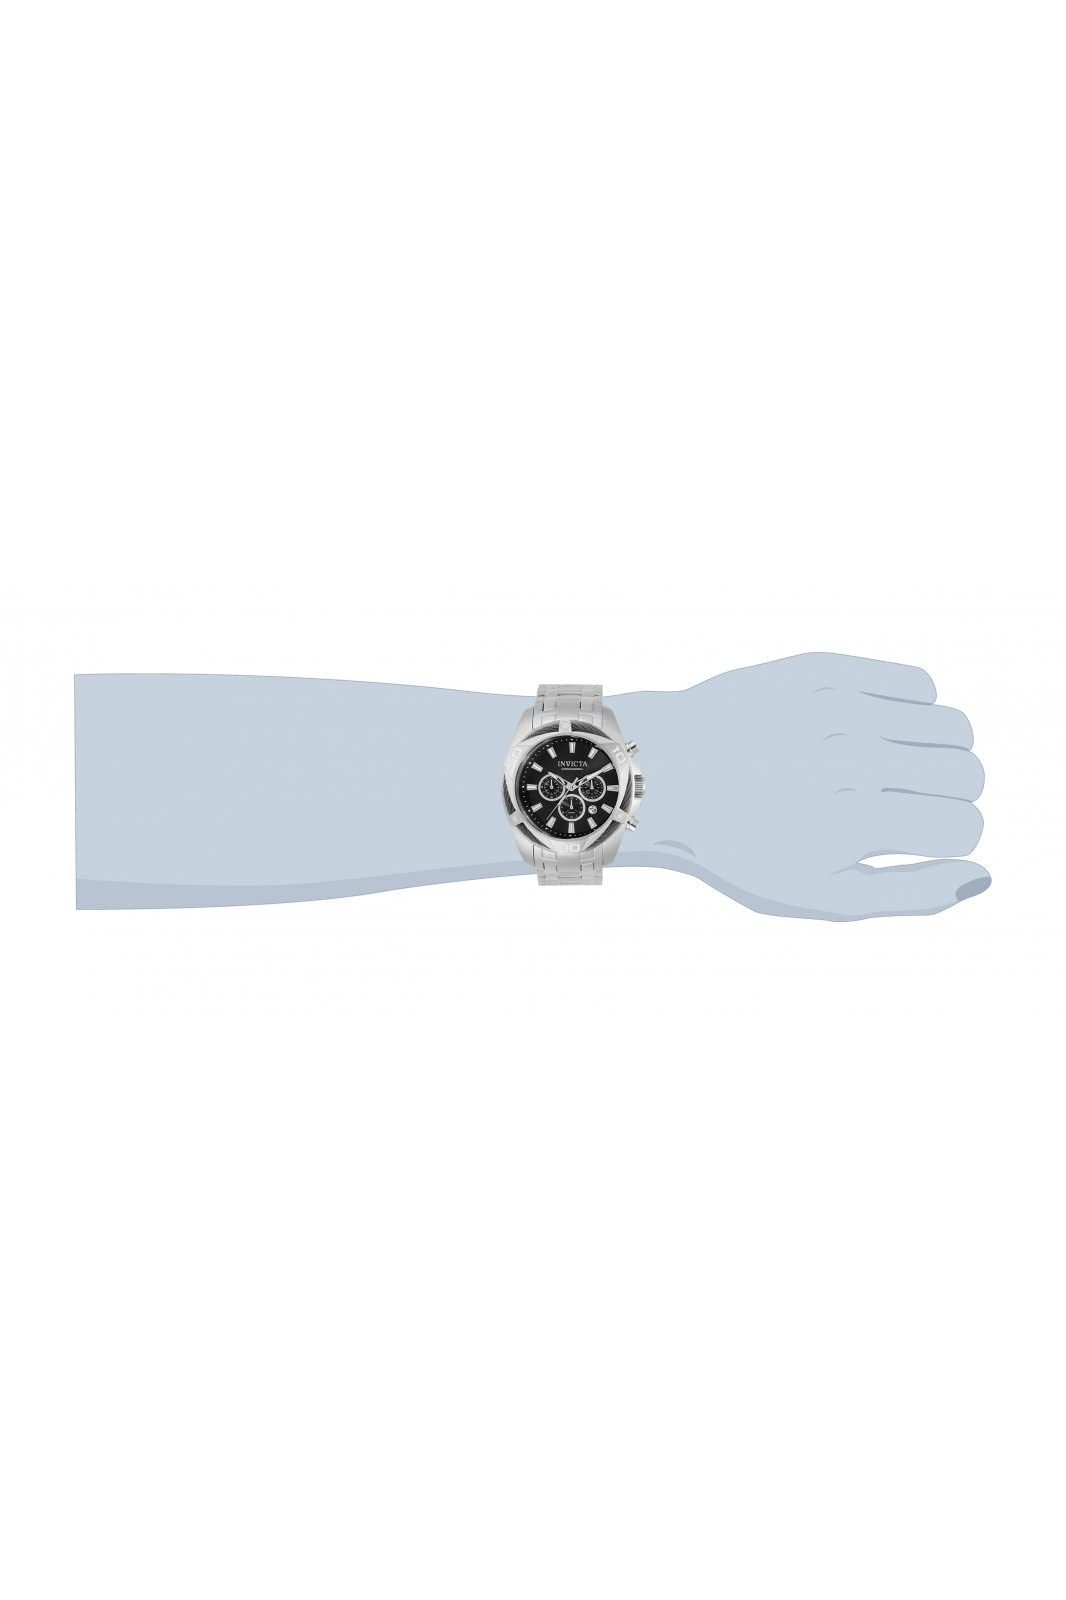 Invicta Men's Bolt 34118 Quartz Watch